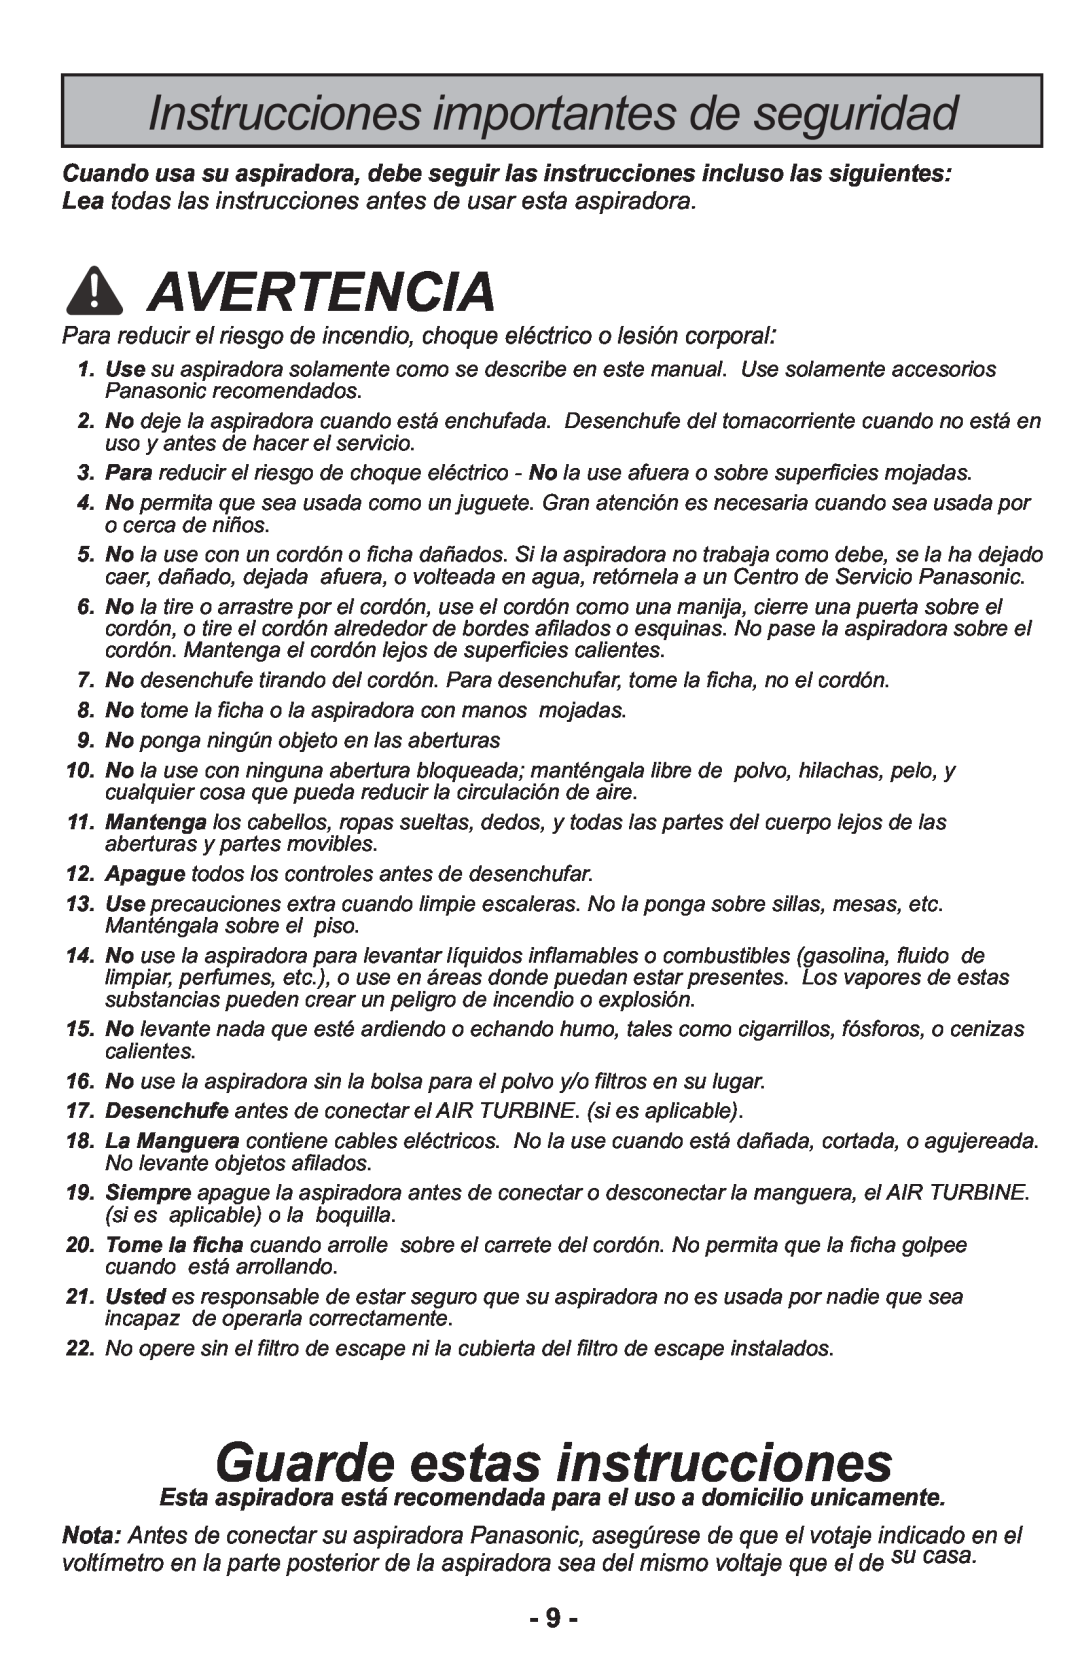 Panasonic MCCG917 manuel dutilisation Instrucciones importantes de seguridad, Avertencia, Guarde estas instrucciones 